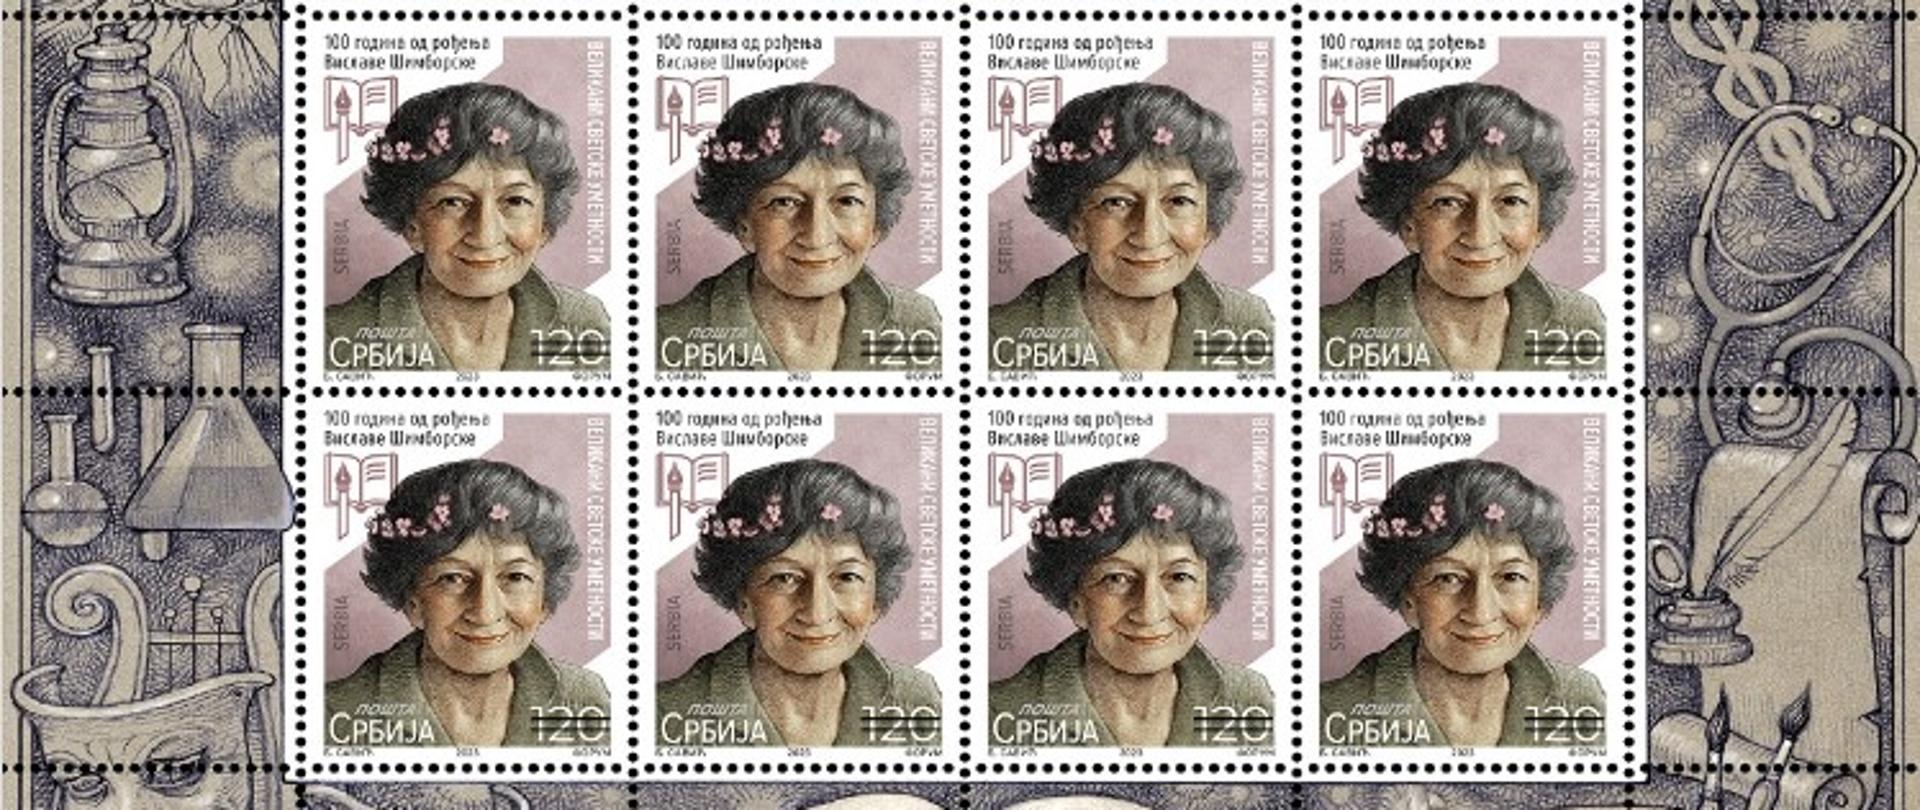 U znak obeležavanja 100. godišnjice rođenja Vislave Šimborske, na inicijativu Ambasade Republike Poljske u Beogradu, Pošta Srbije je pustila u promet marku posvećenu poljskoj nobelovki.